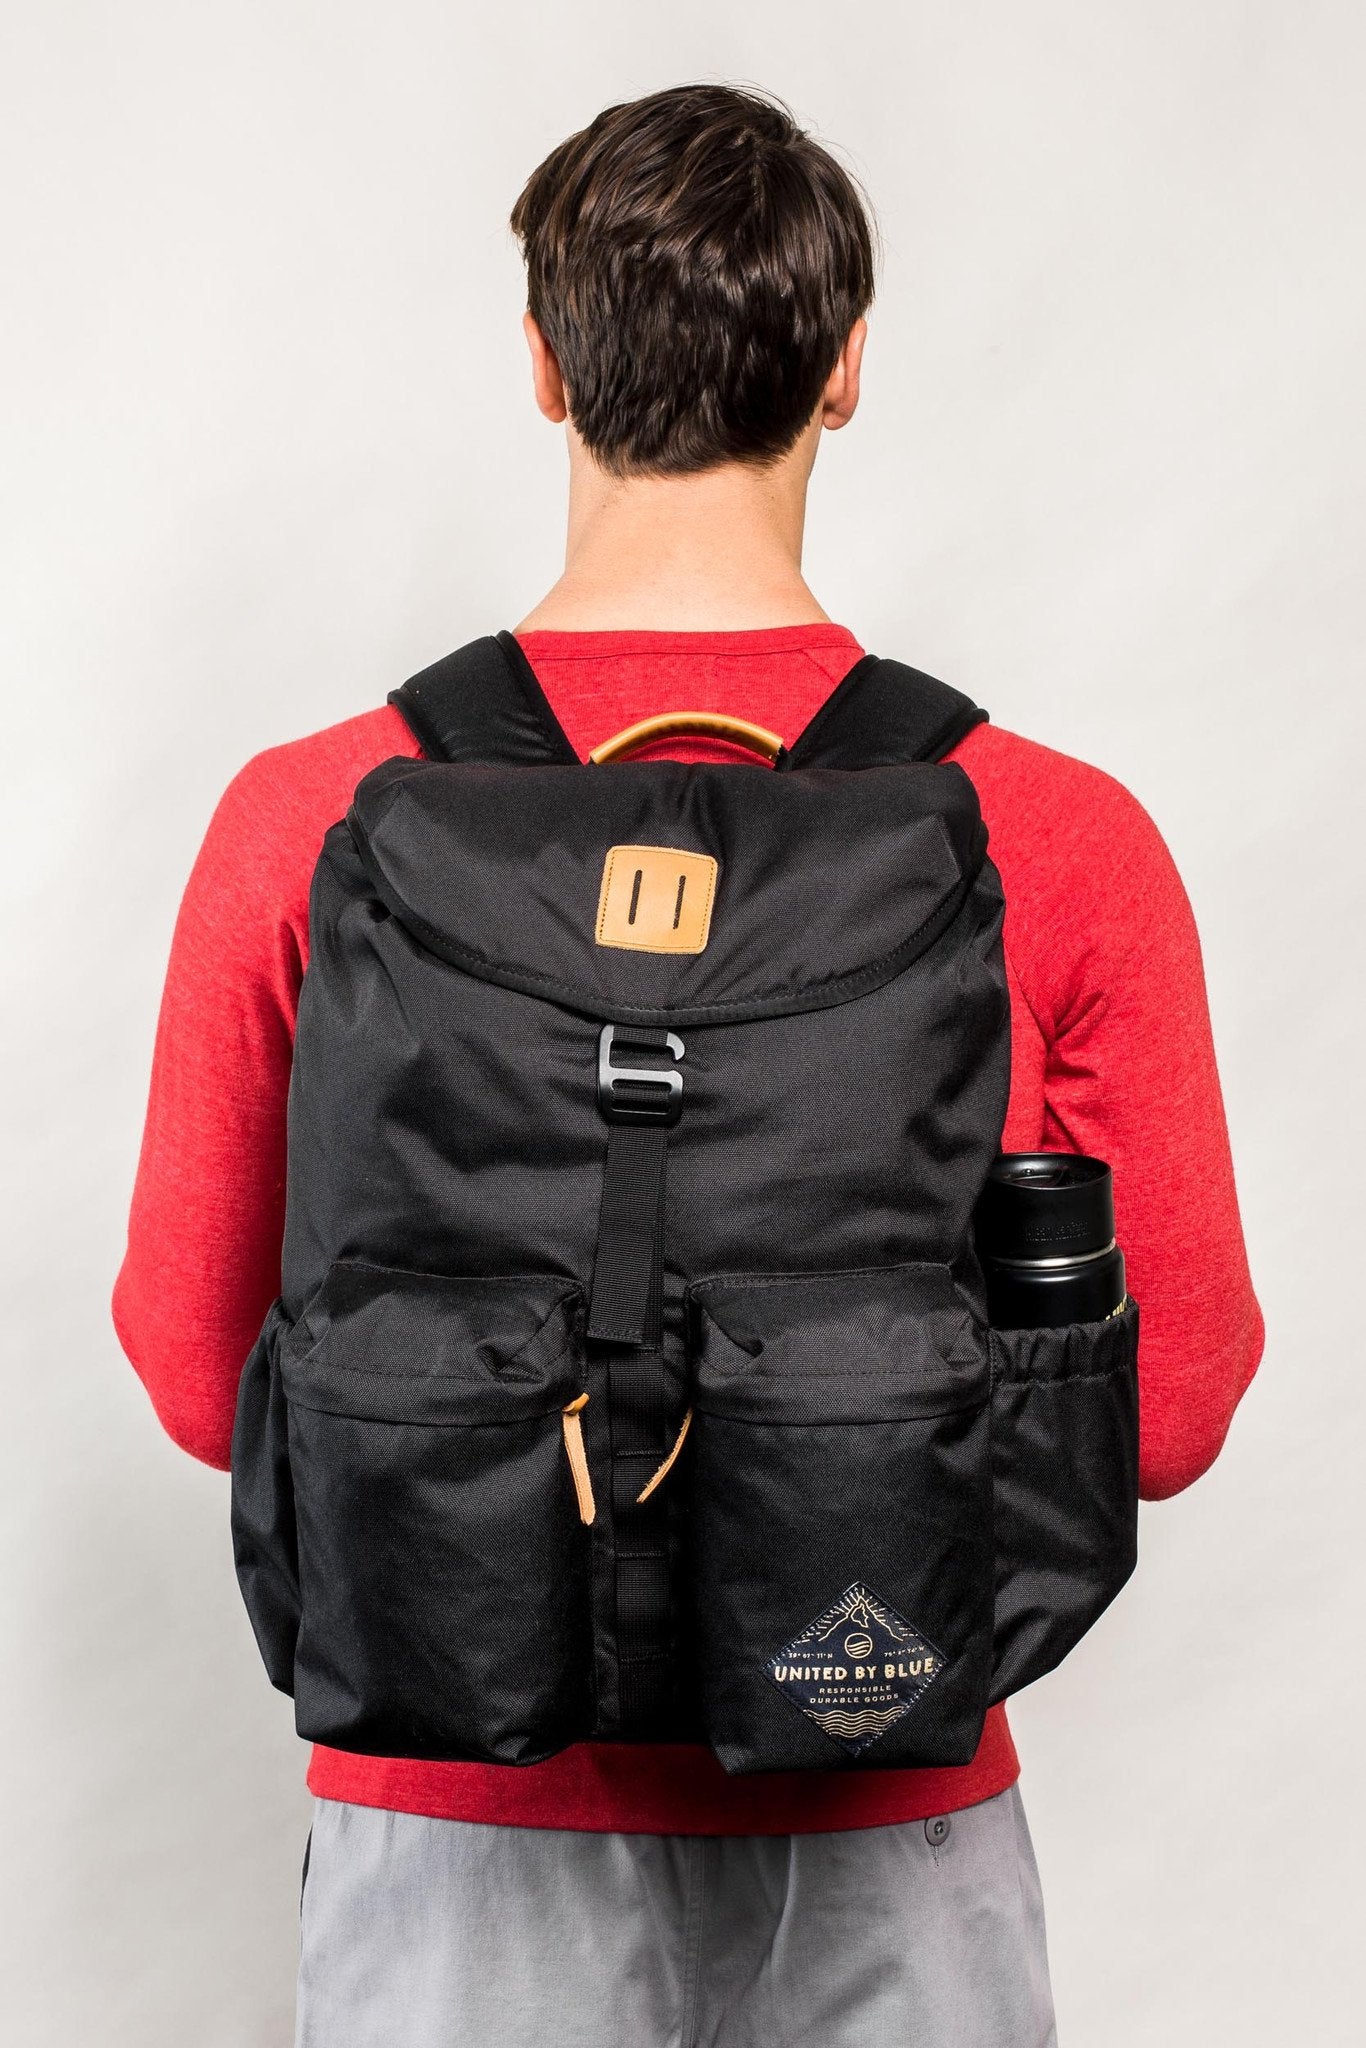 30L Base Backpack